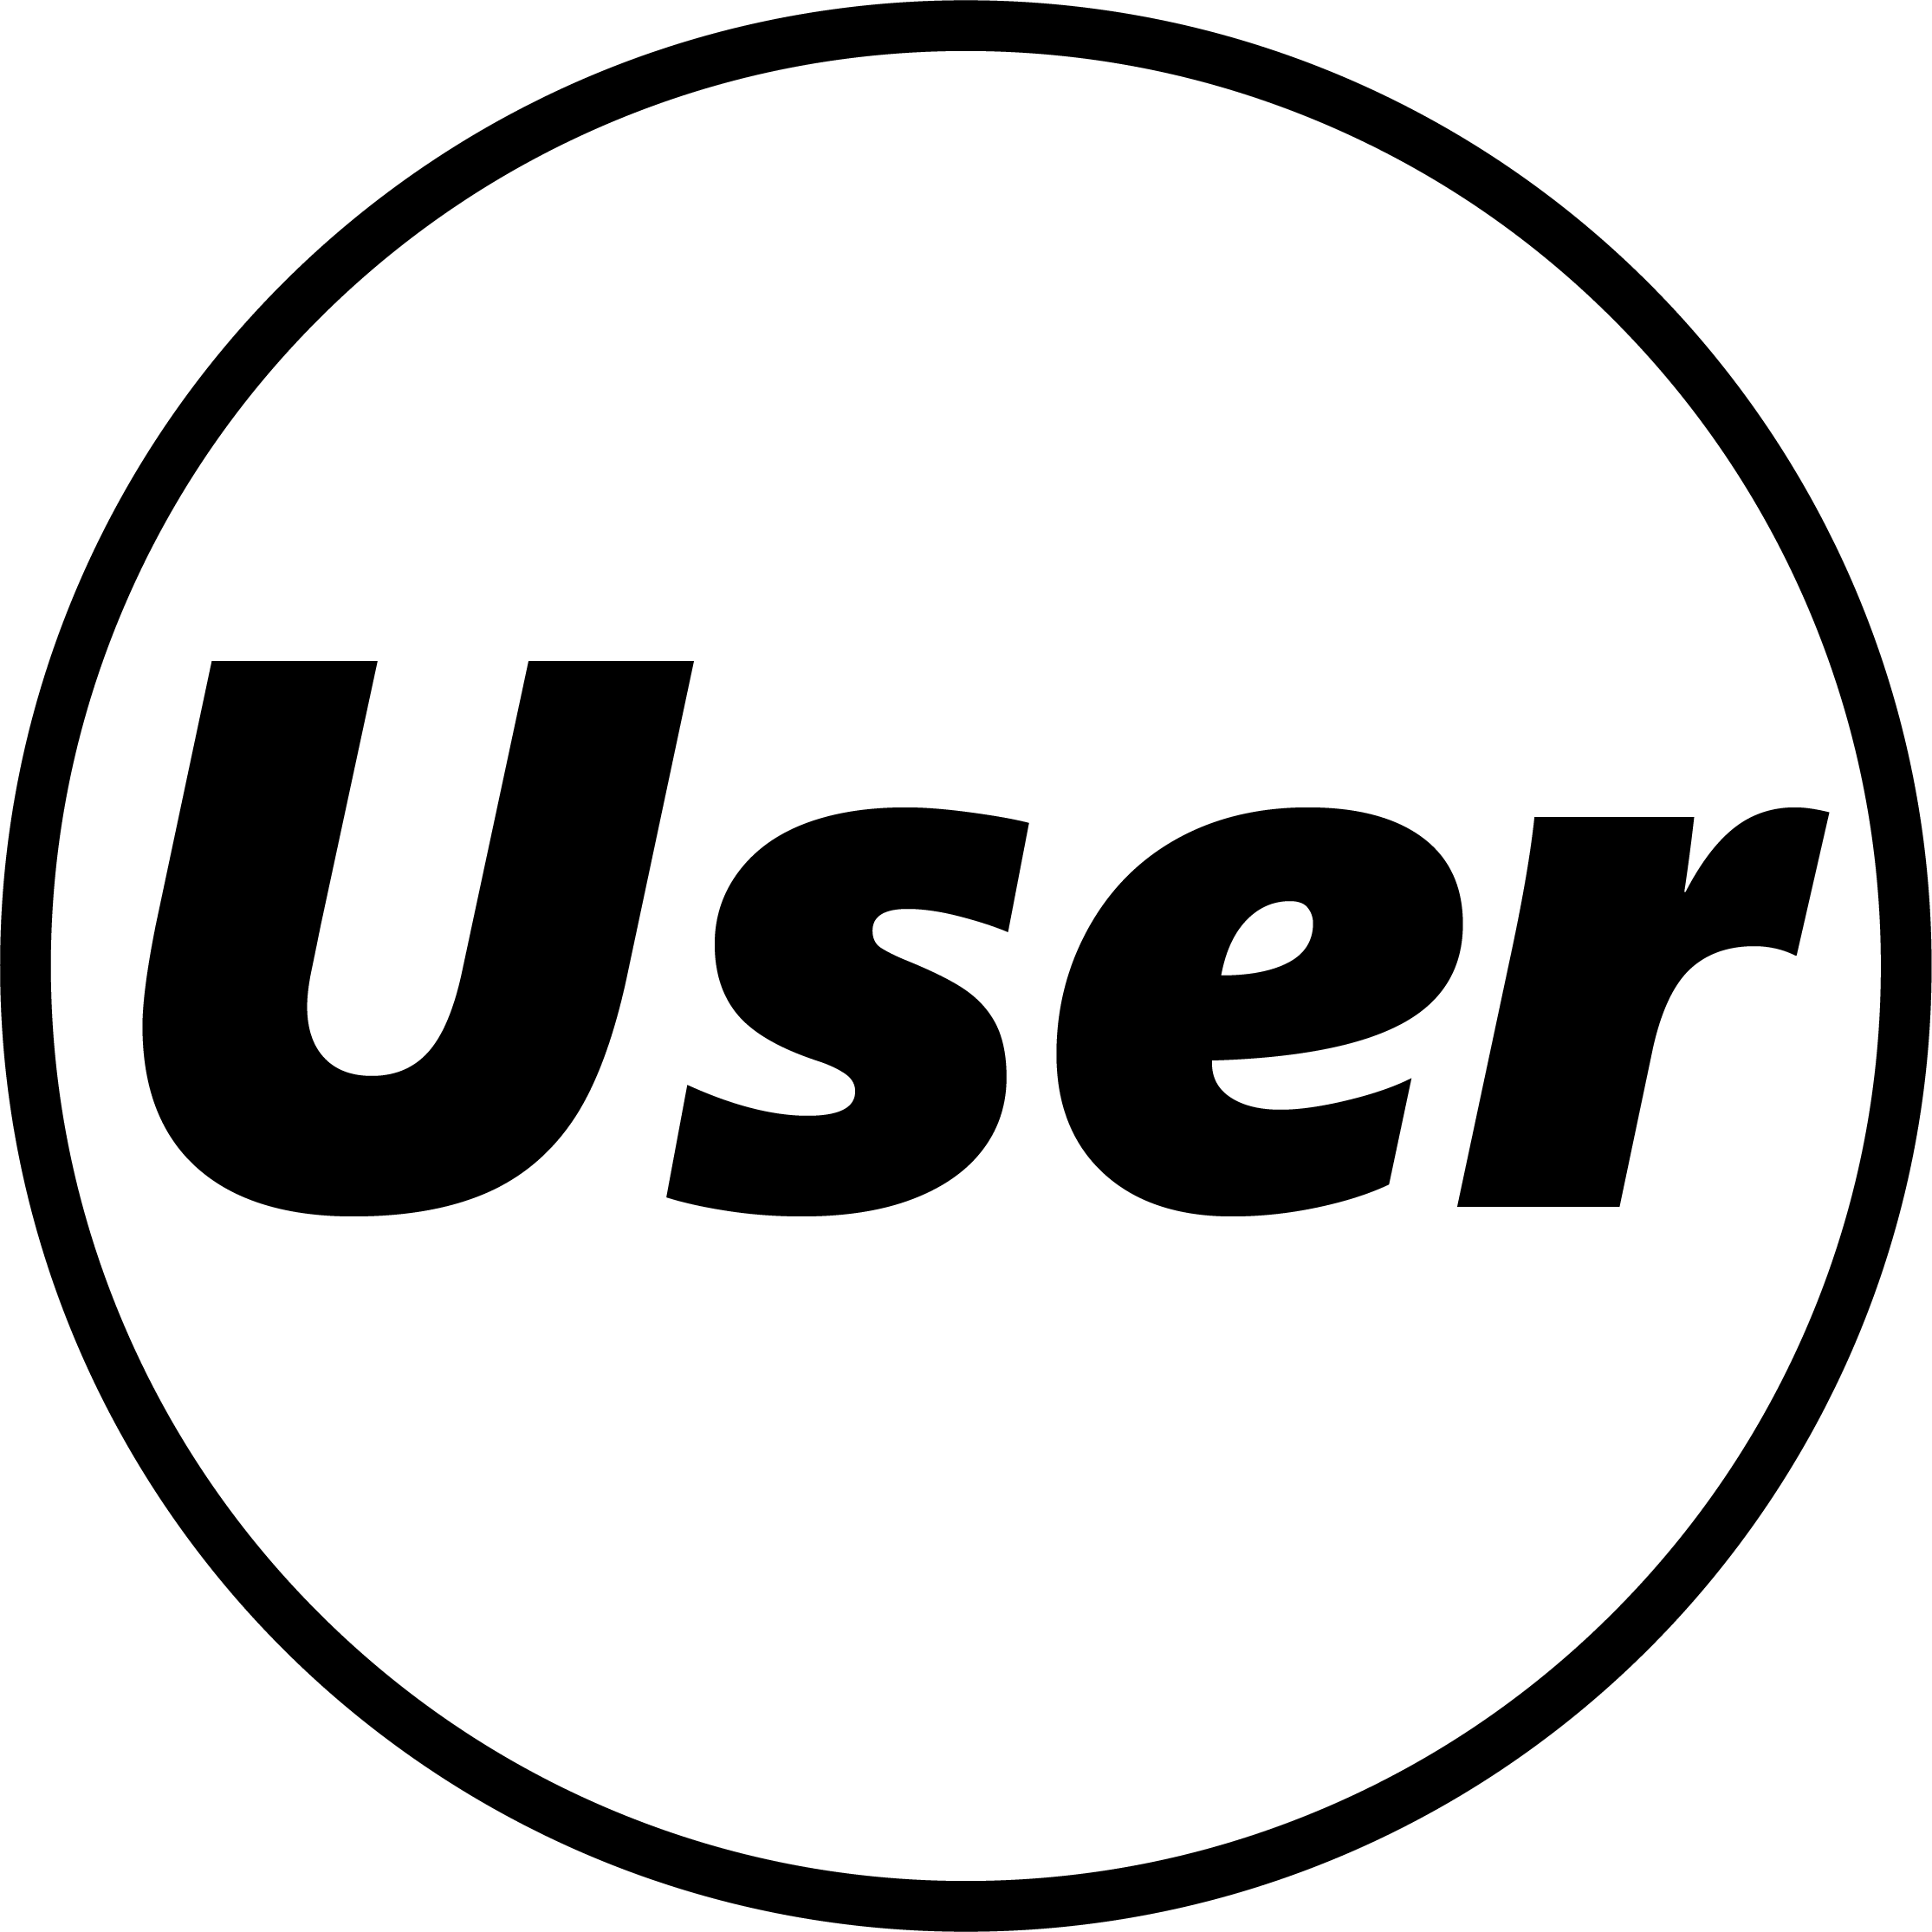 user